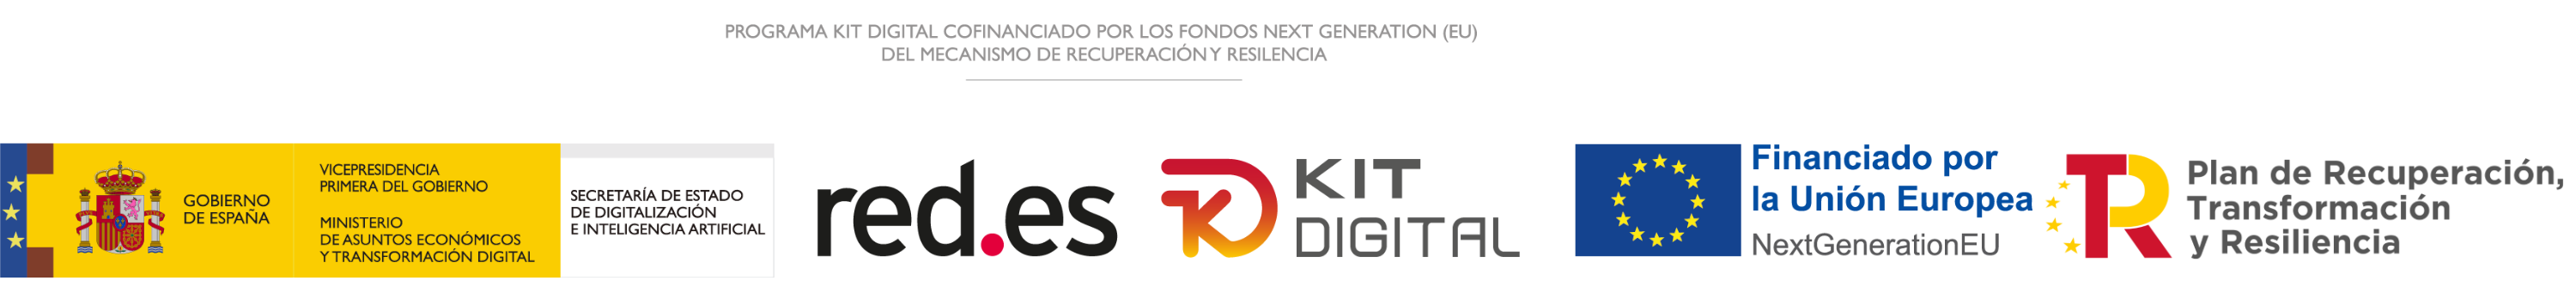 Logo Digitalizadores Kit Digital